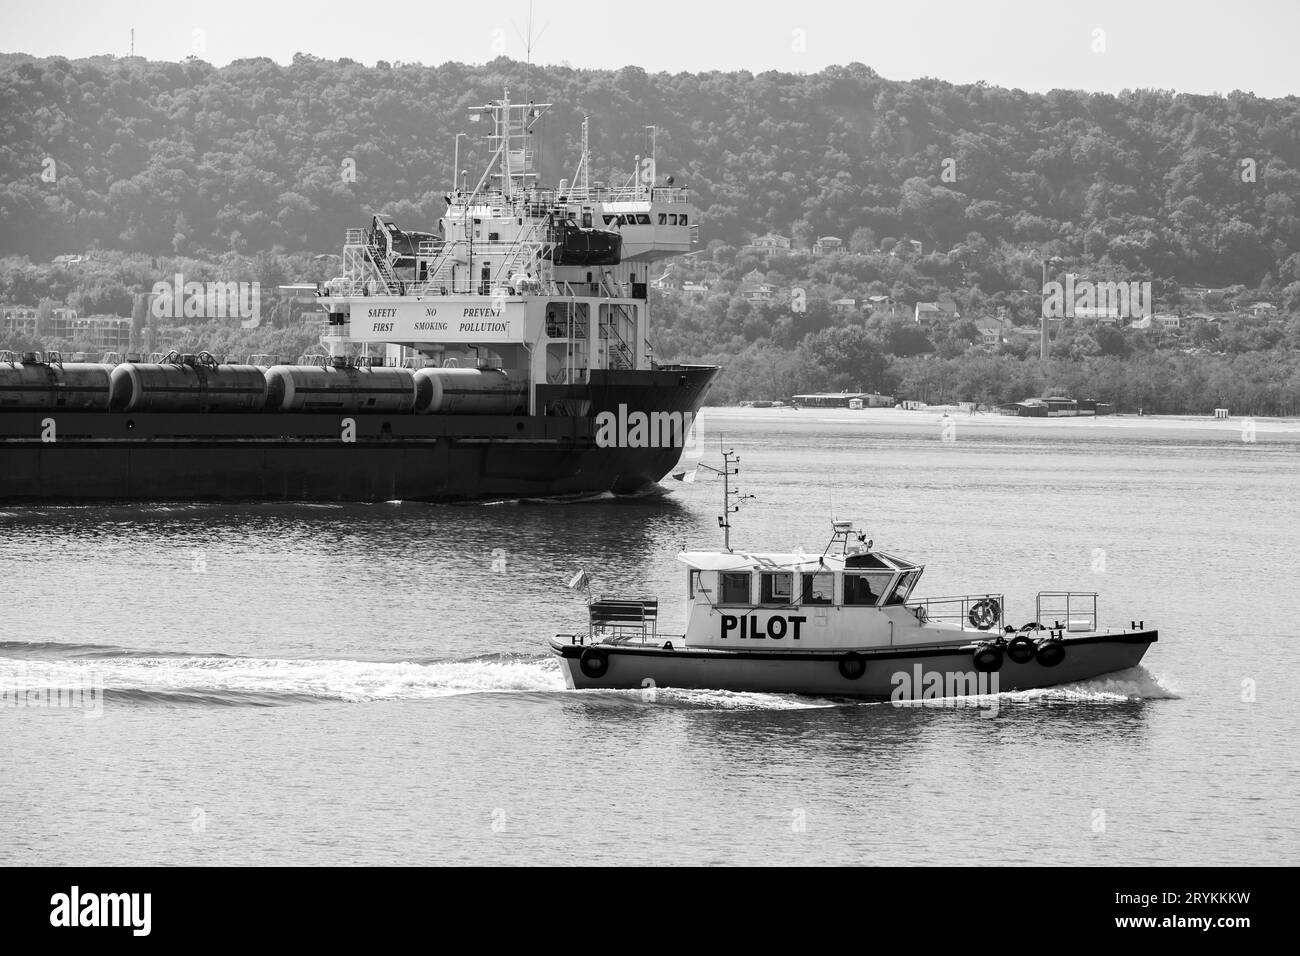 Bateau-pilote entre dans le port de Varna, port de la mer Noire, Bulgarie. Photo noir et blanc Banque D'Images